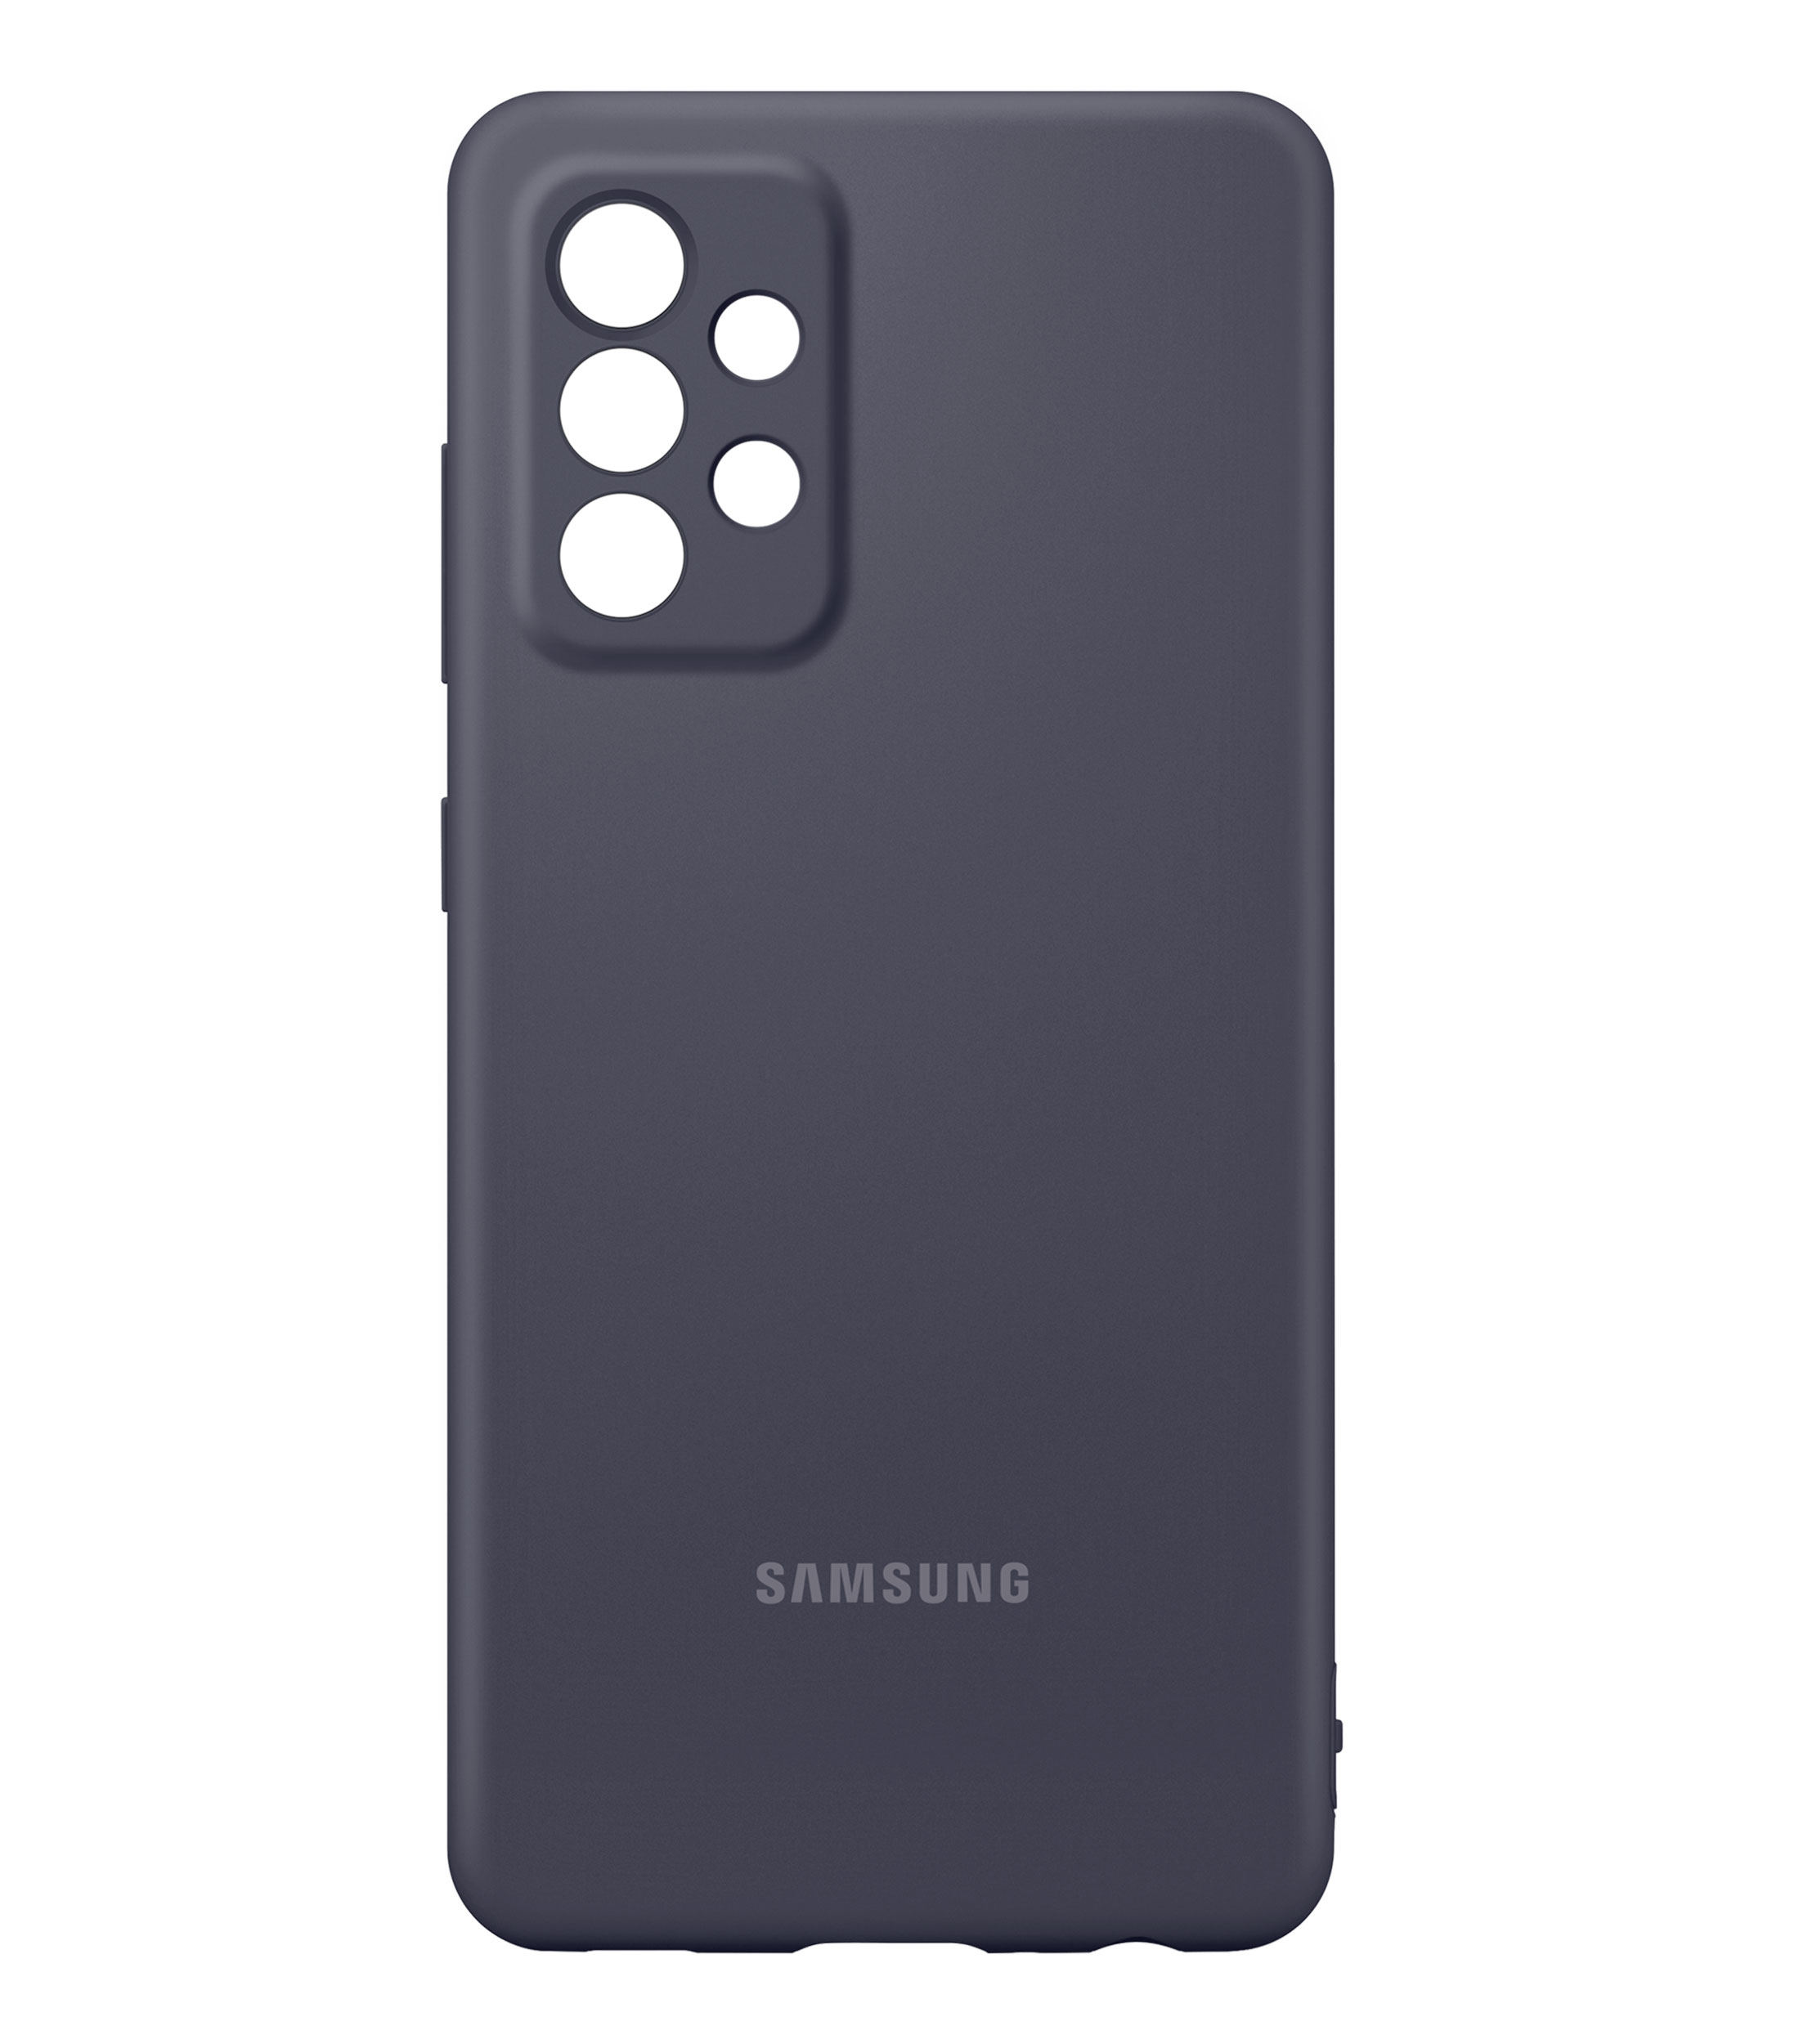 Funda protectora para Samsung Galaxy A52 5G, anticaídas y absorbe los  golpes para Samsung SM-A528B/DS Galaxy A52s 5G, SM-A528N, Galaxy A52